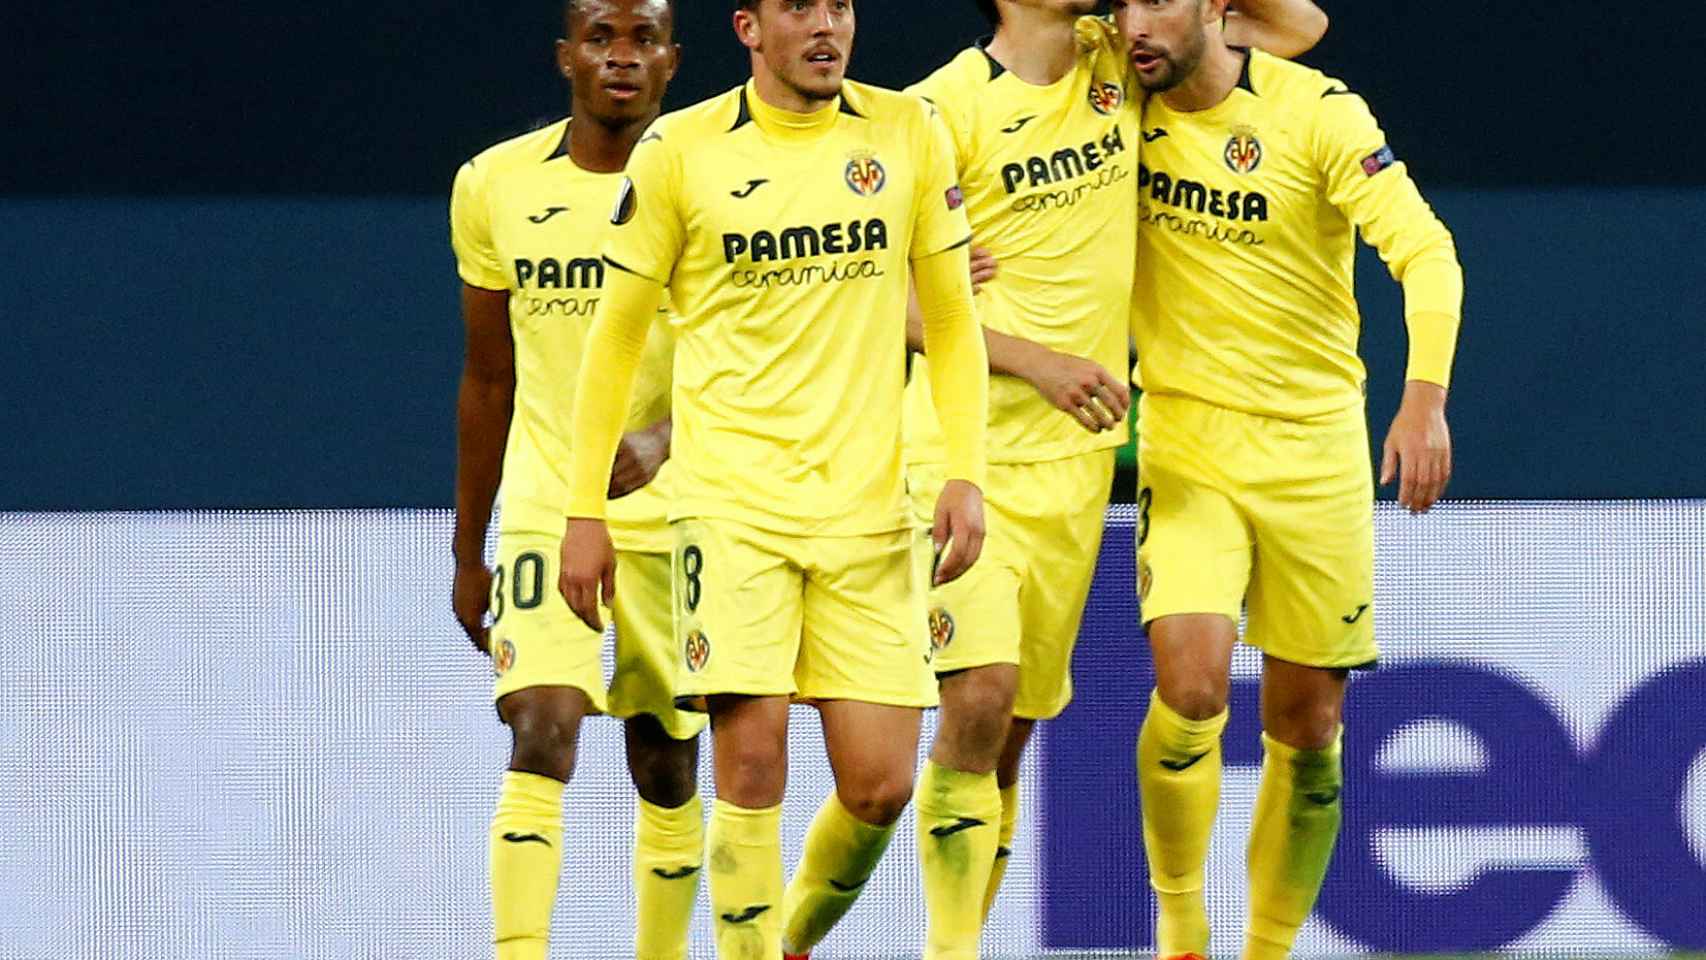 Los jugadores del Villarreal celebran un gol en la Europa League ante el Zenit